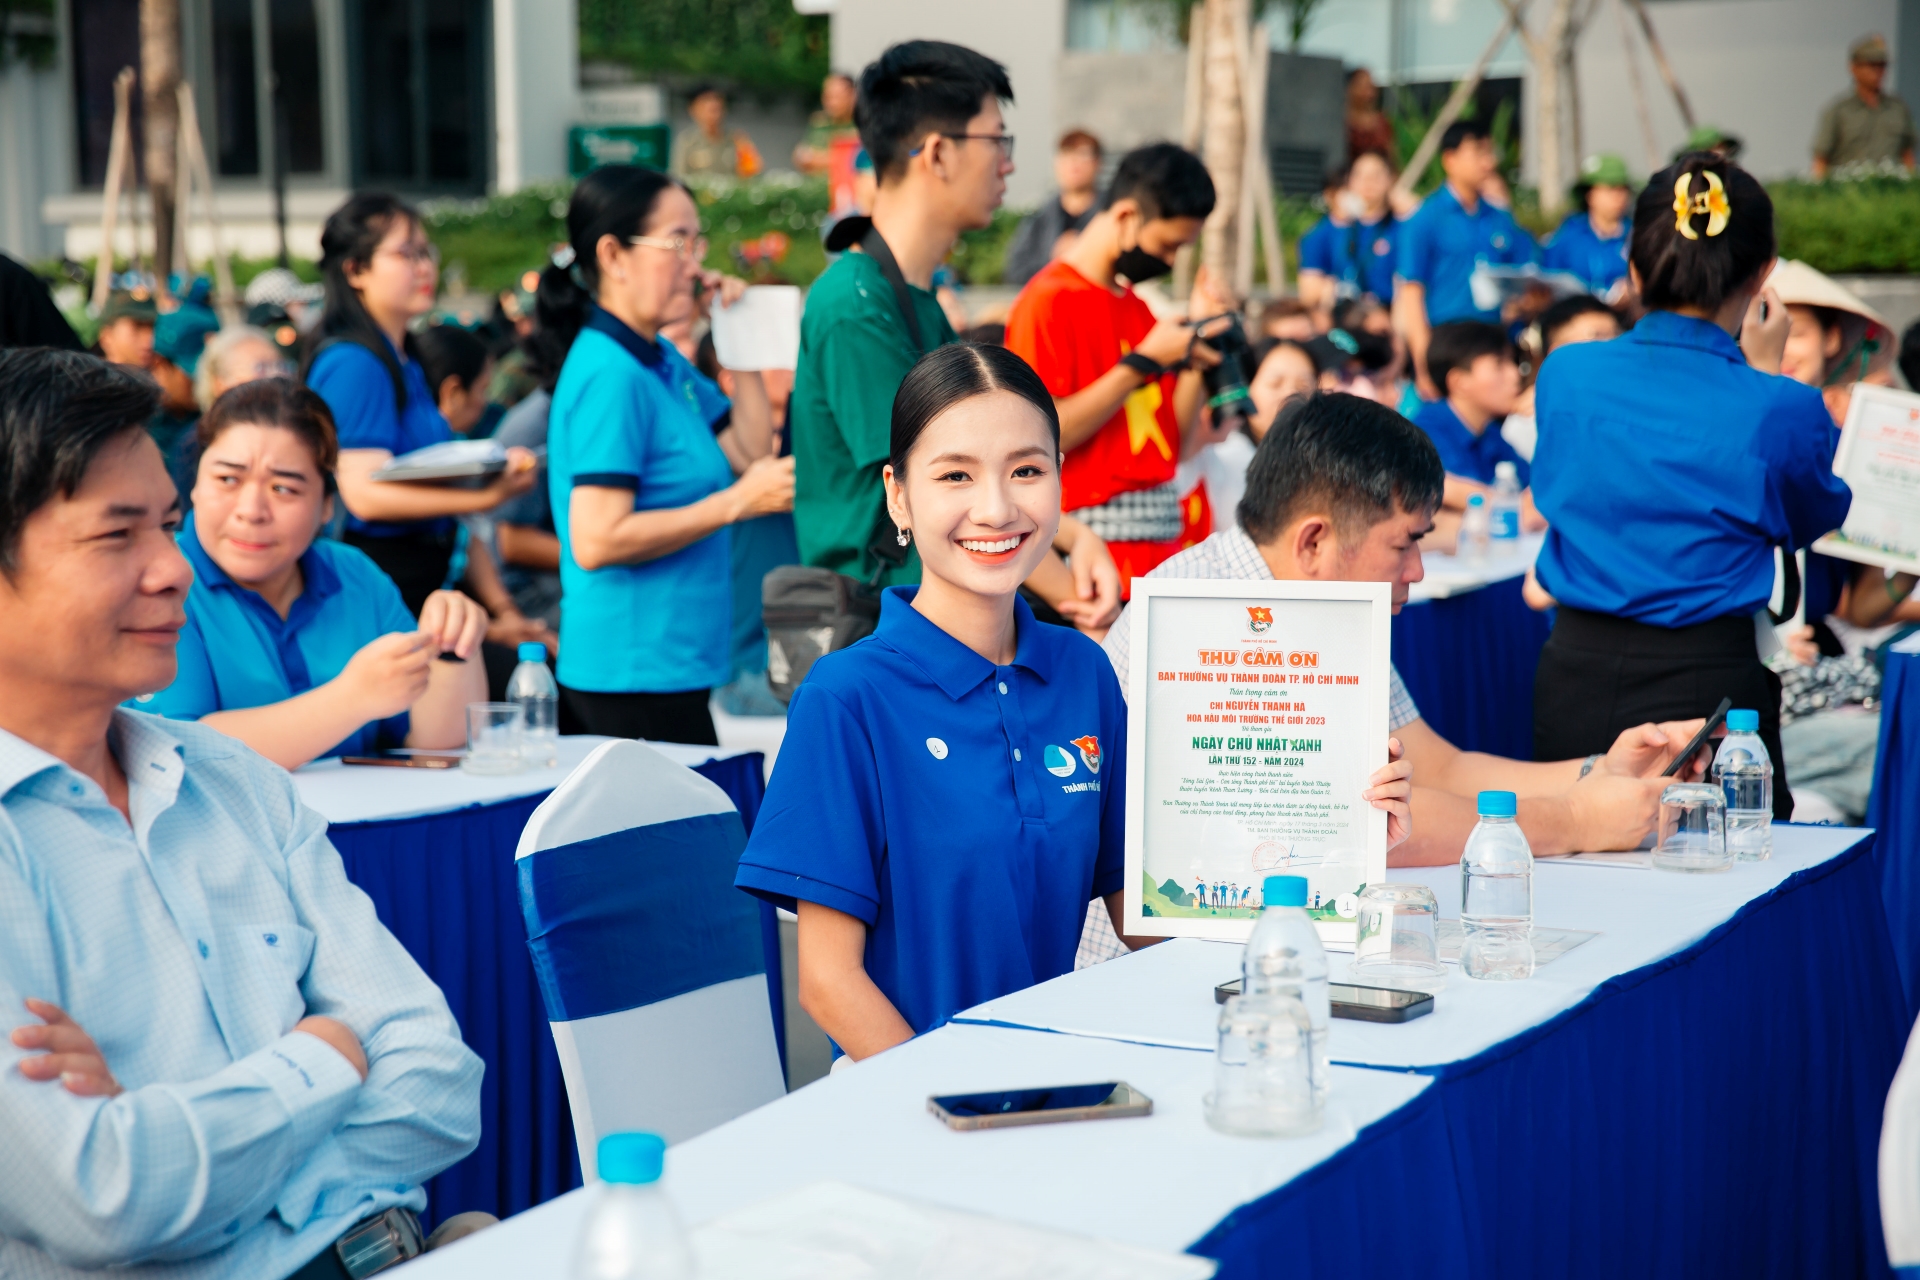 Hoa hậu Nguyễn Thanh Hà góp sức cải tạo cảnh quan môi trường vì thành phố xanh - 8